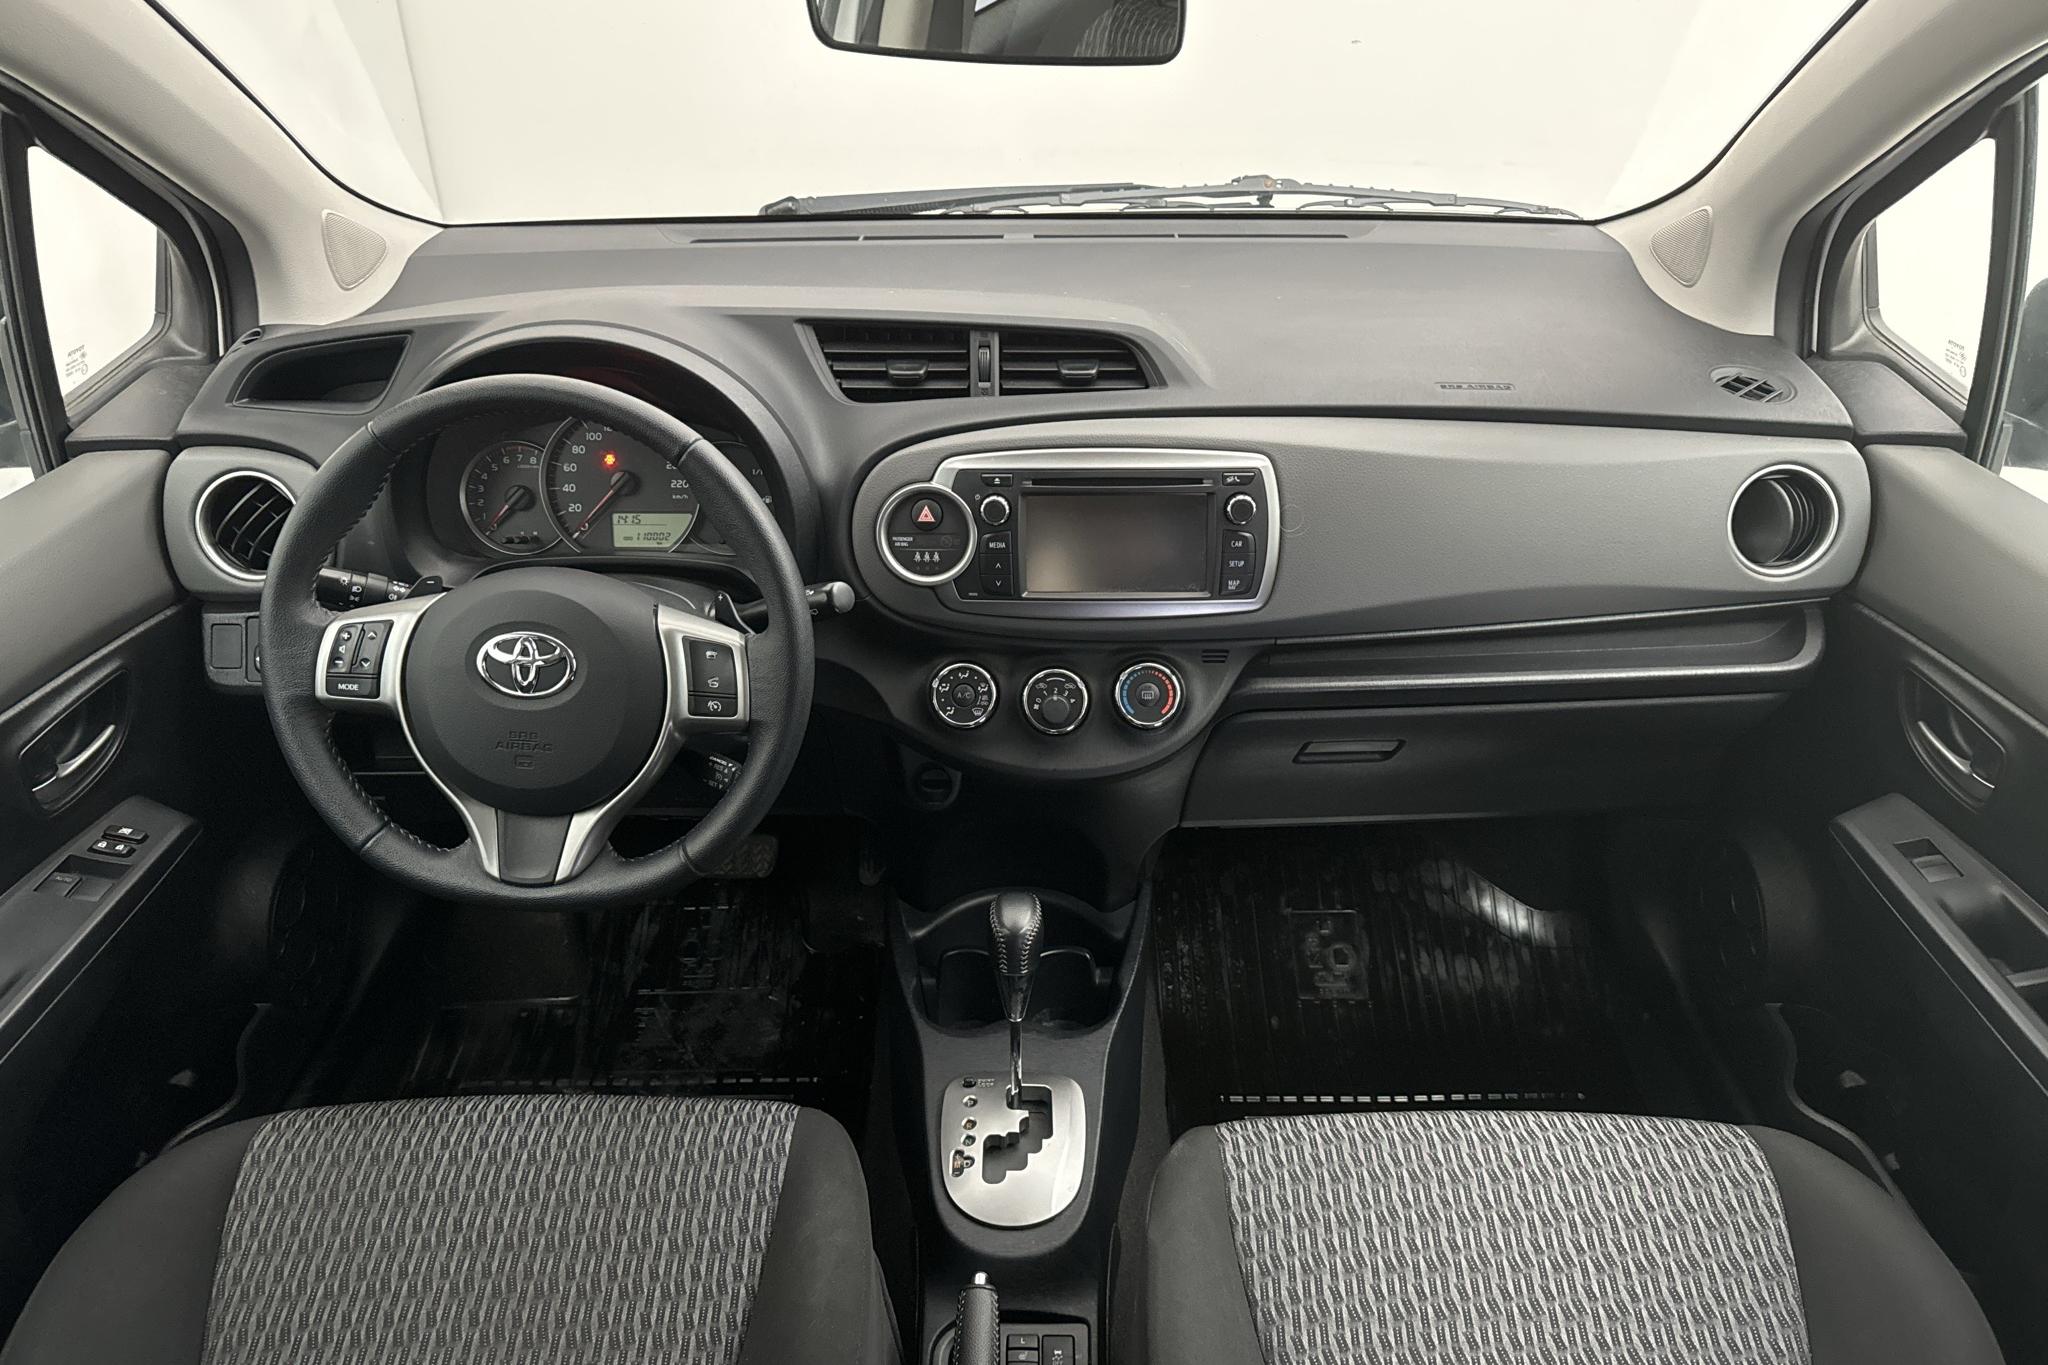 Toyota Yaris 1.33 5dr (100hk) - 110 000 km - Automaattinen - valkoinen - 2014